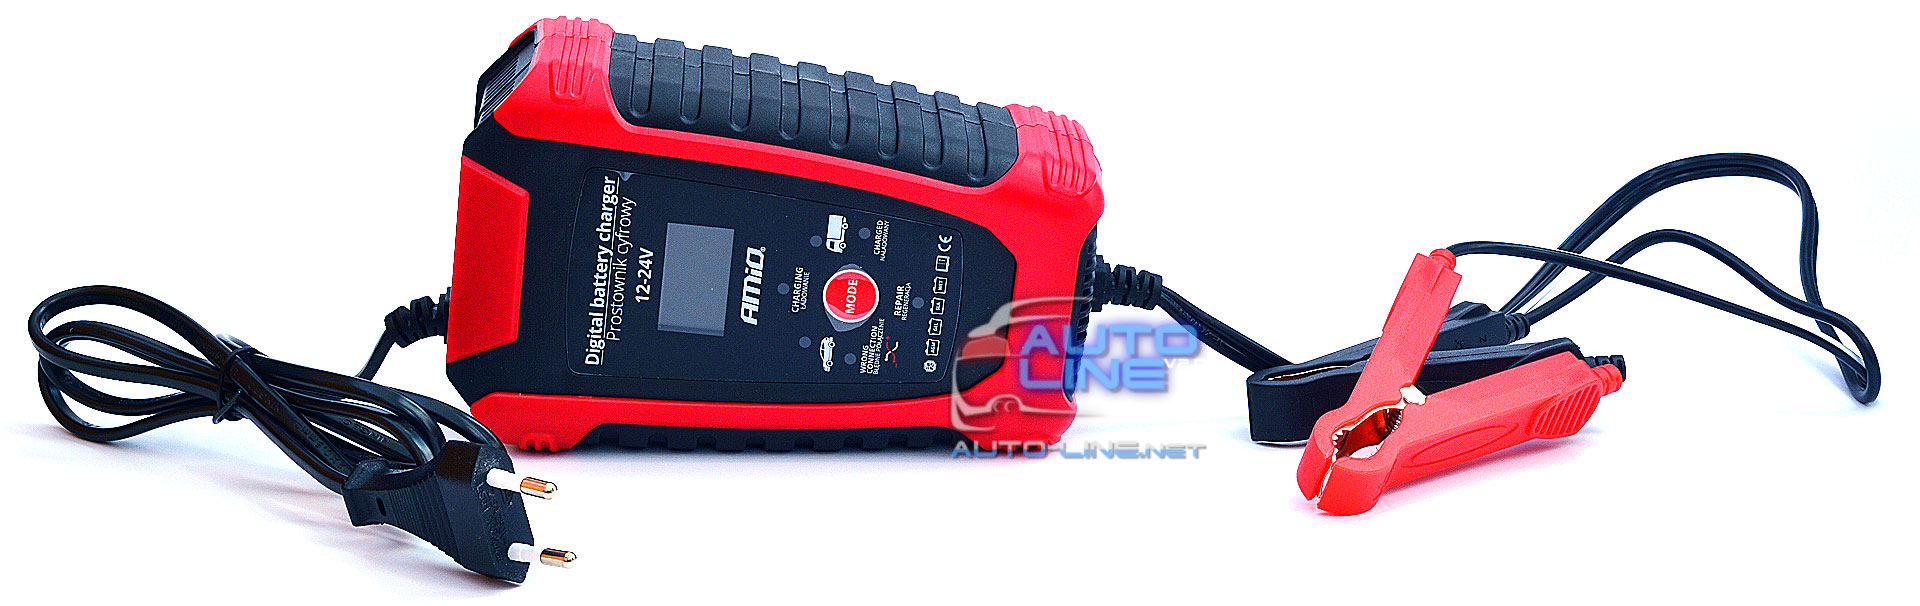 AMiO DBC-03, 12В/24В, 6A/3A (02379) - Интеллектуальное зарядное устройство 12/24В